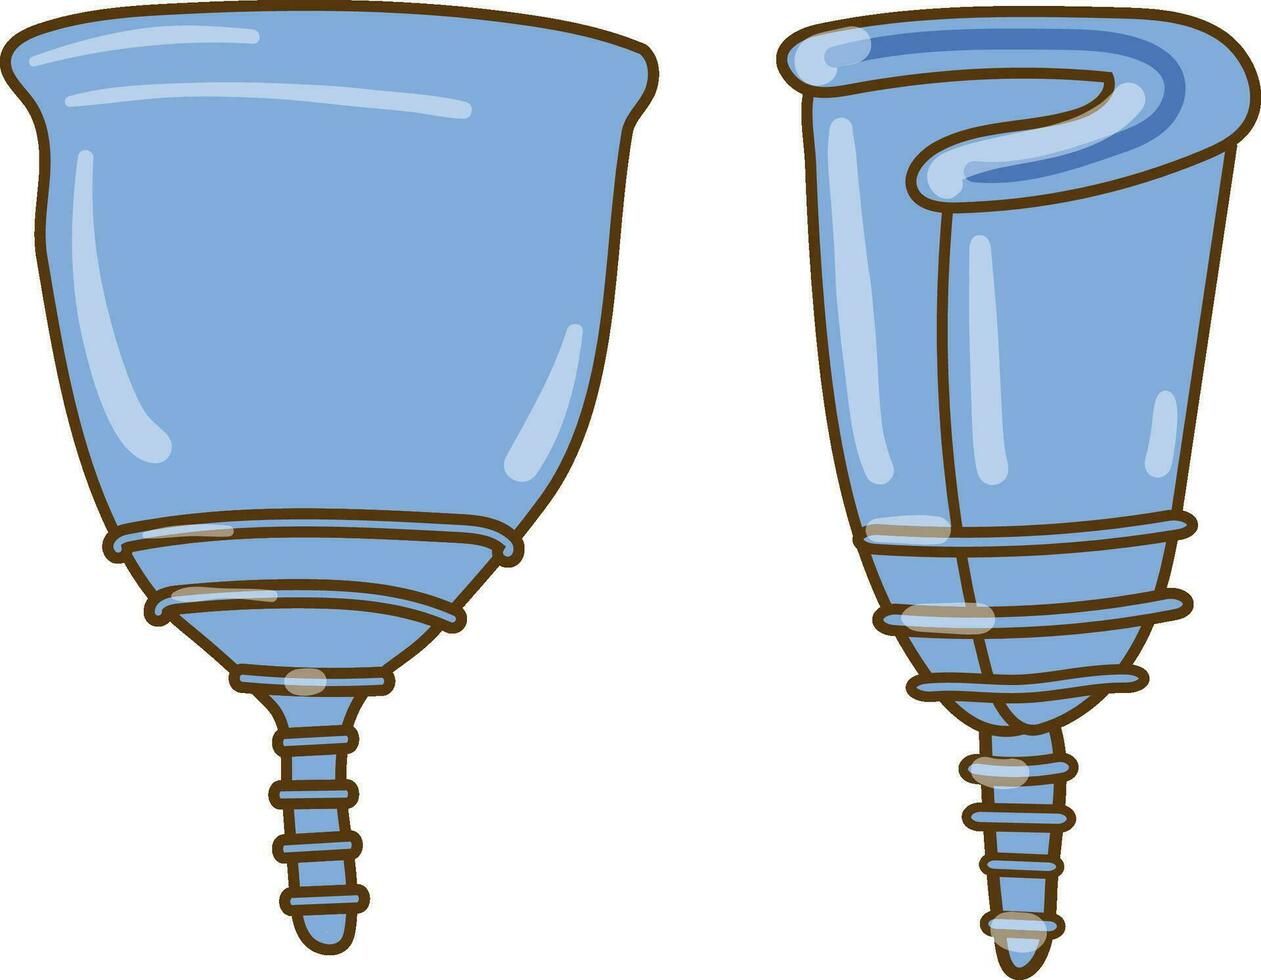 färgad ritad för hand vektor uppsättning illustration handla om menstruations- kopp hopfällbar